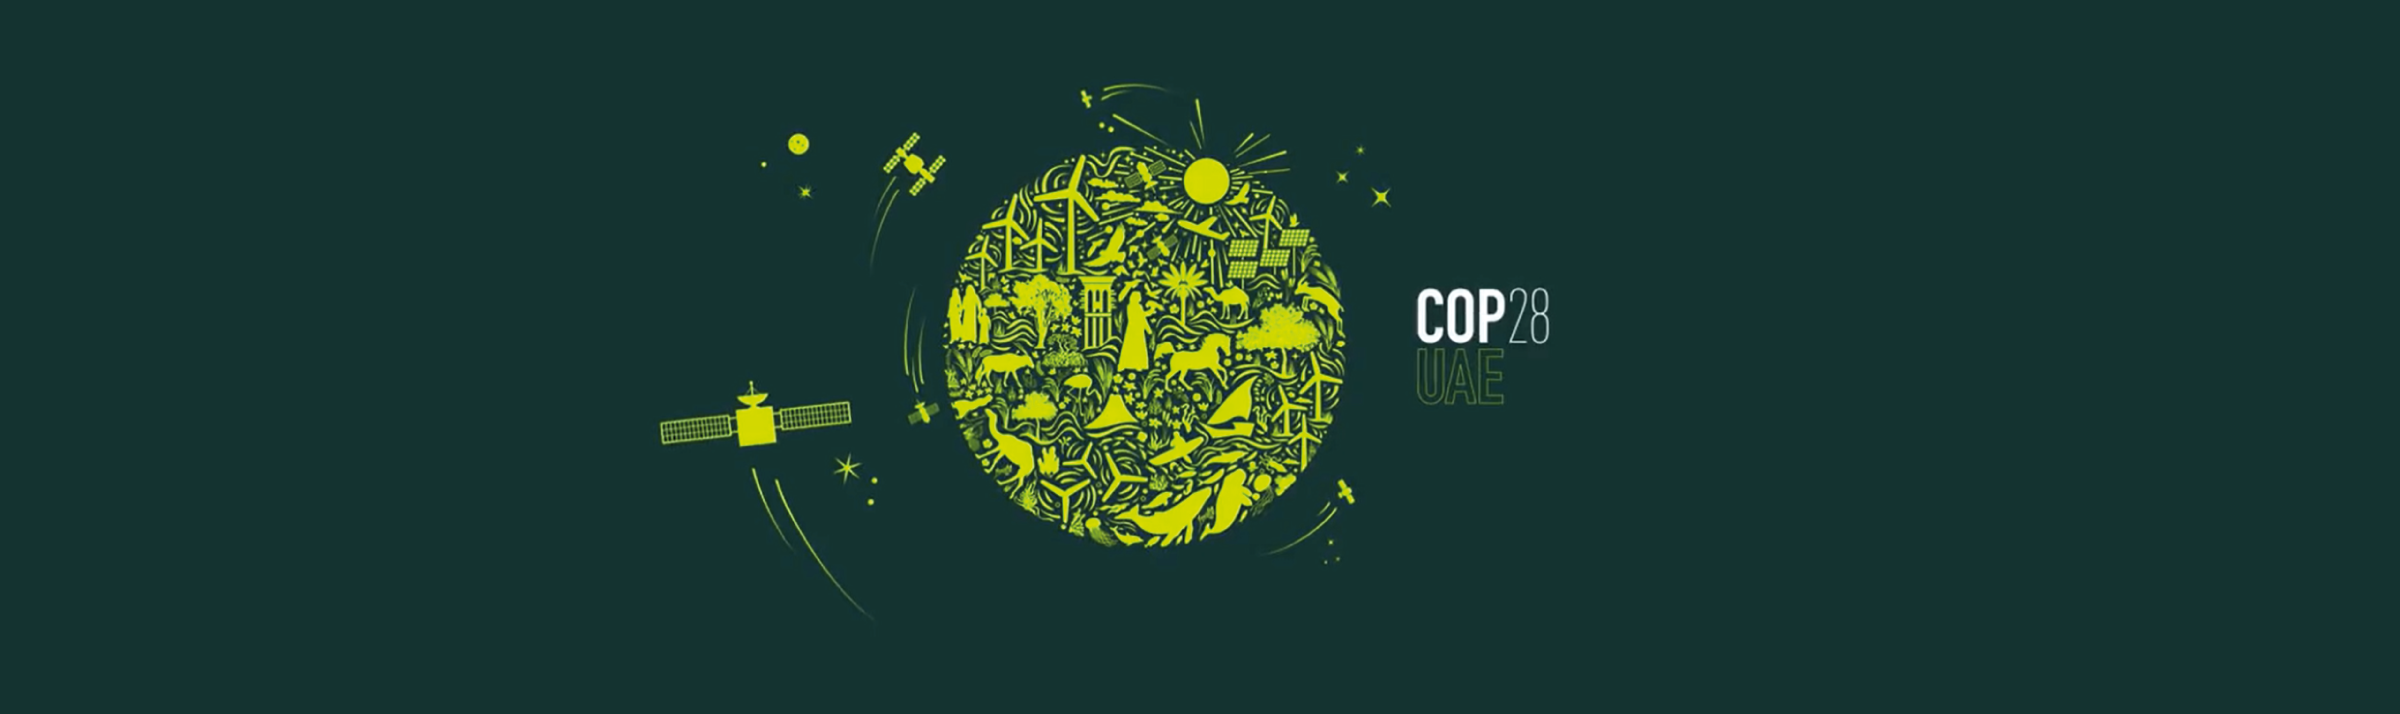 COP28 AmbicionCOP Comunidadporelclima 1